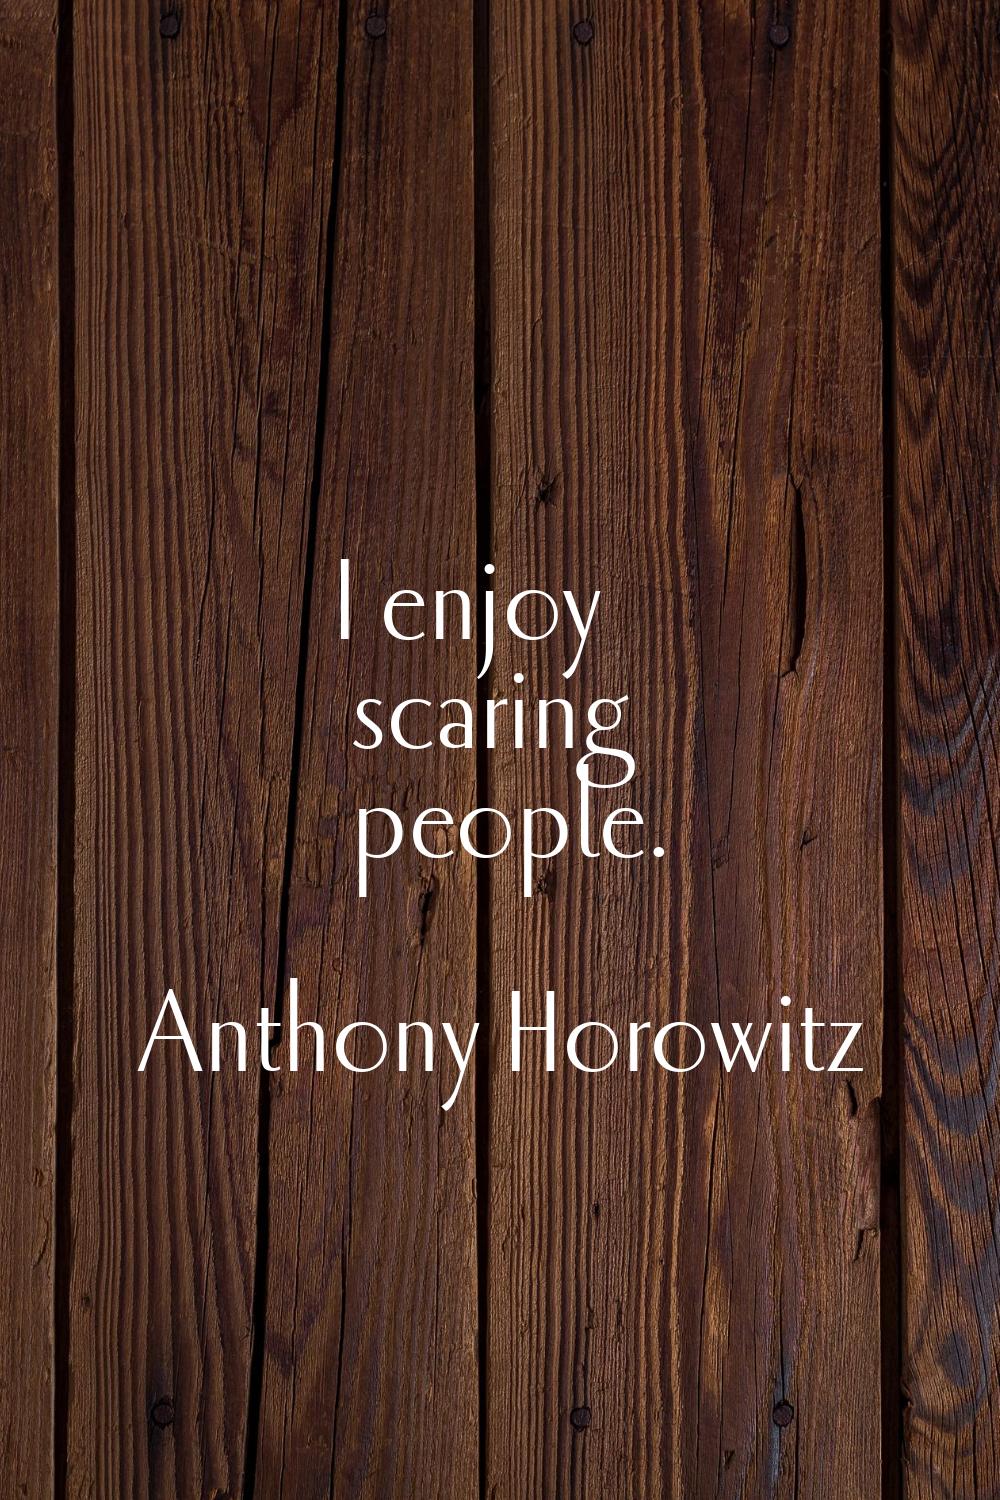 I enjoy scaring people.